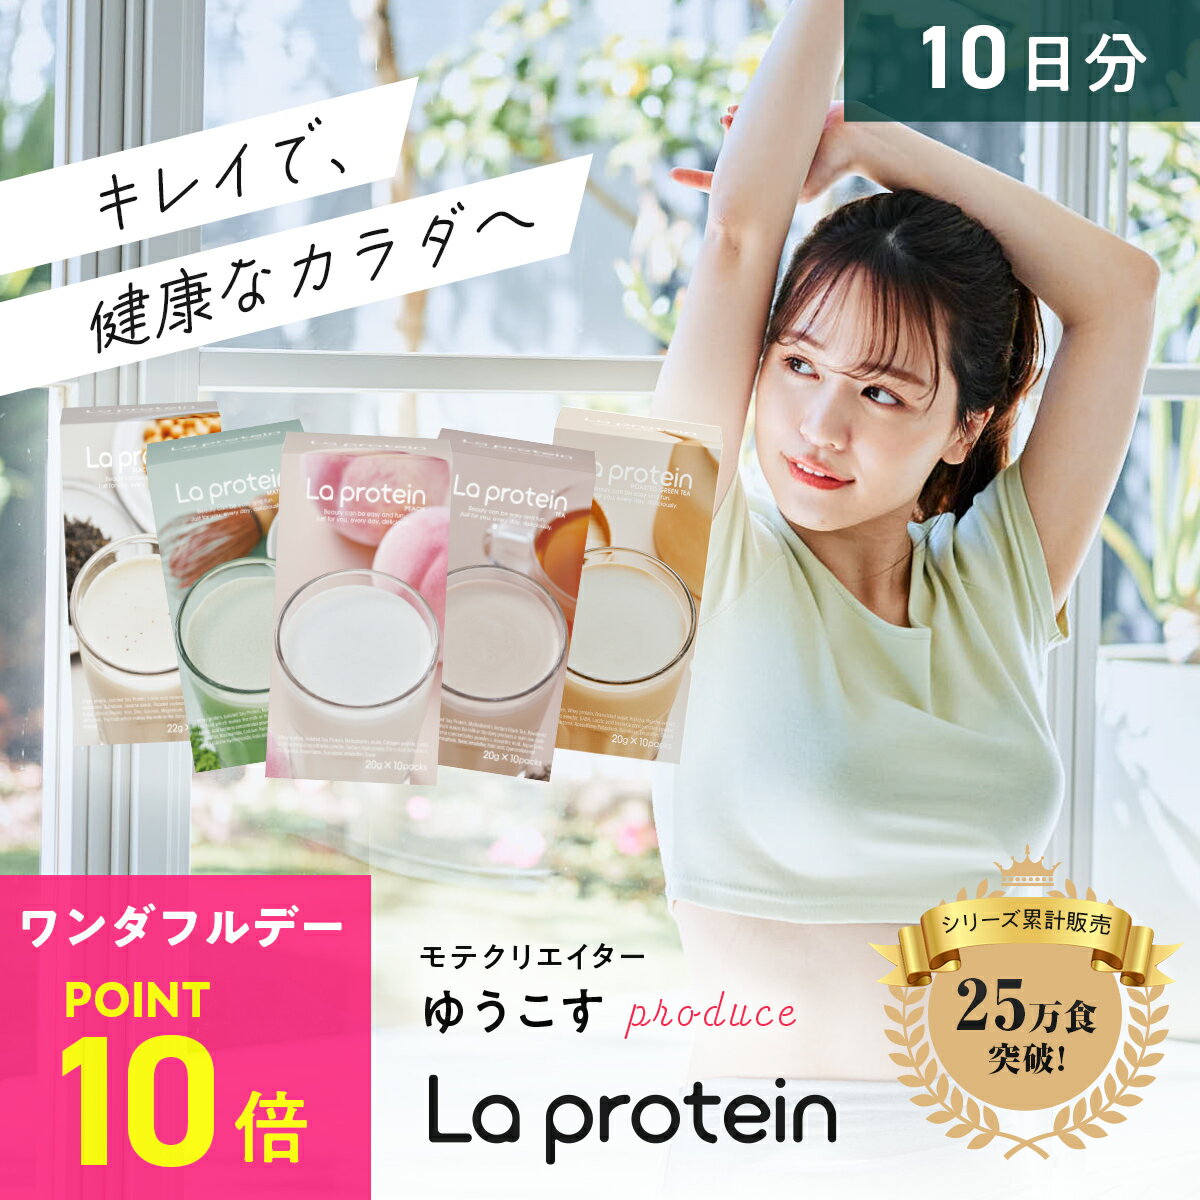 【La protein】 女性用 プロテイン Youtuberゆうこすプロデュース 置き換え ダイエット 美容 ボディメイク ラプロテイン 栄養食 タンパク質 ビタミン お試し用 10日分のサムネイル